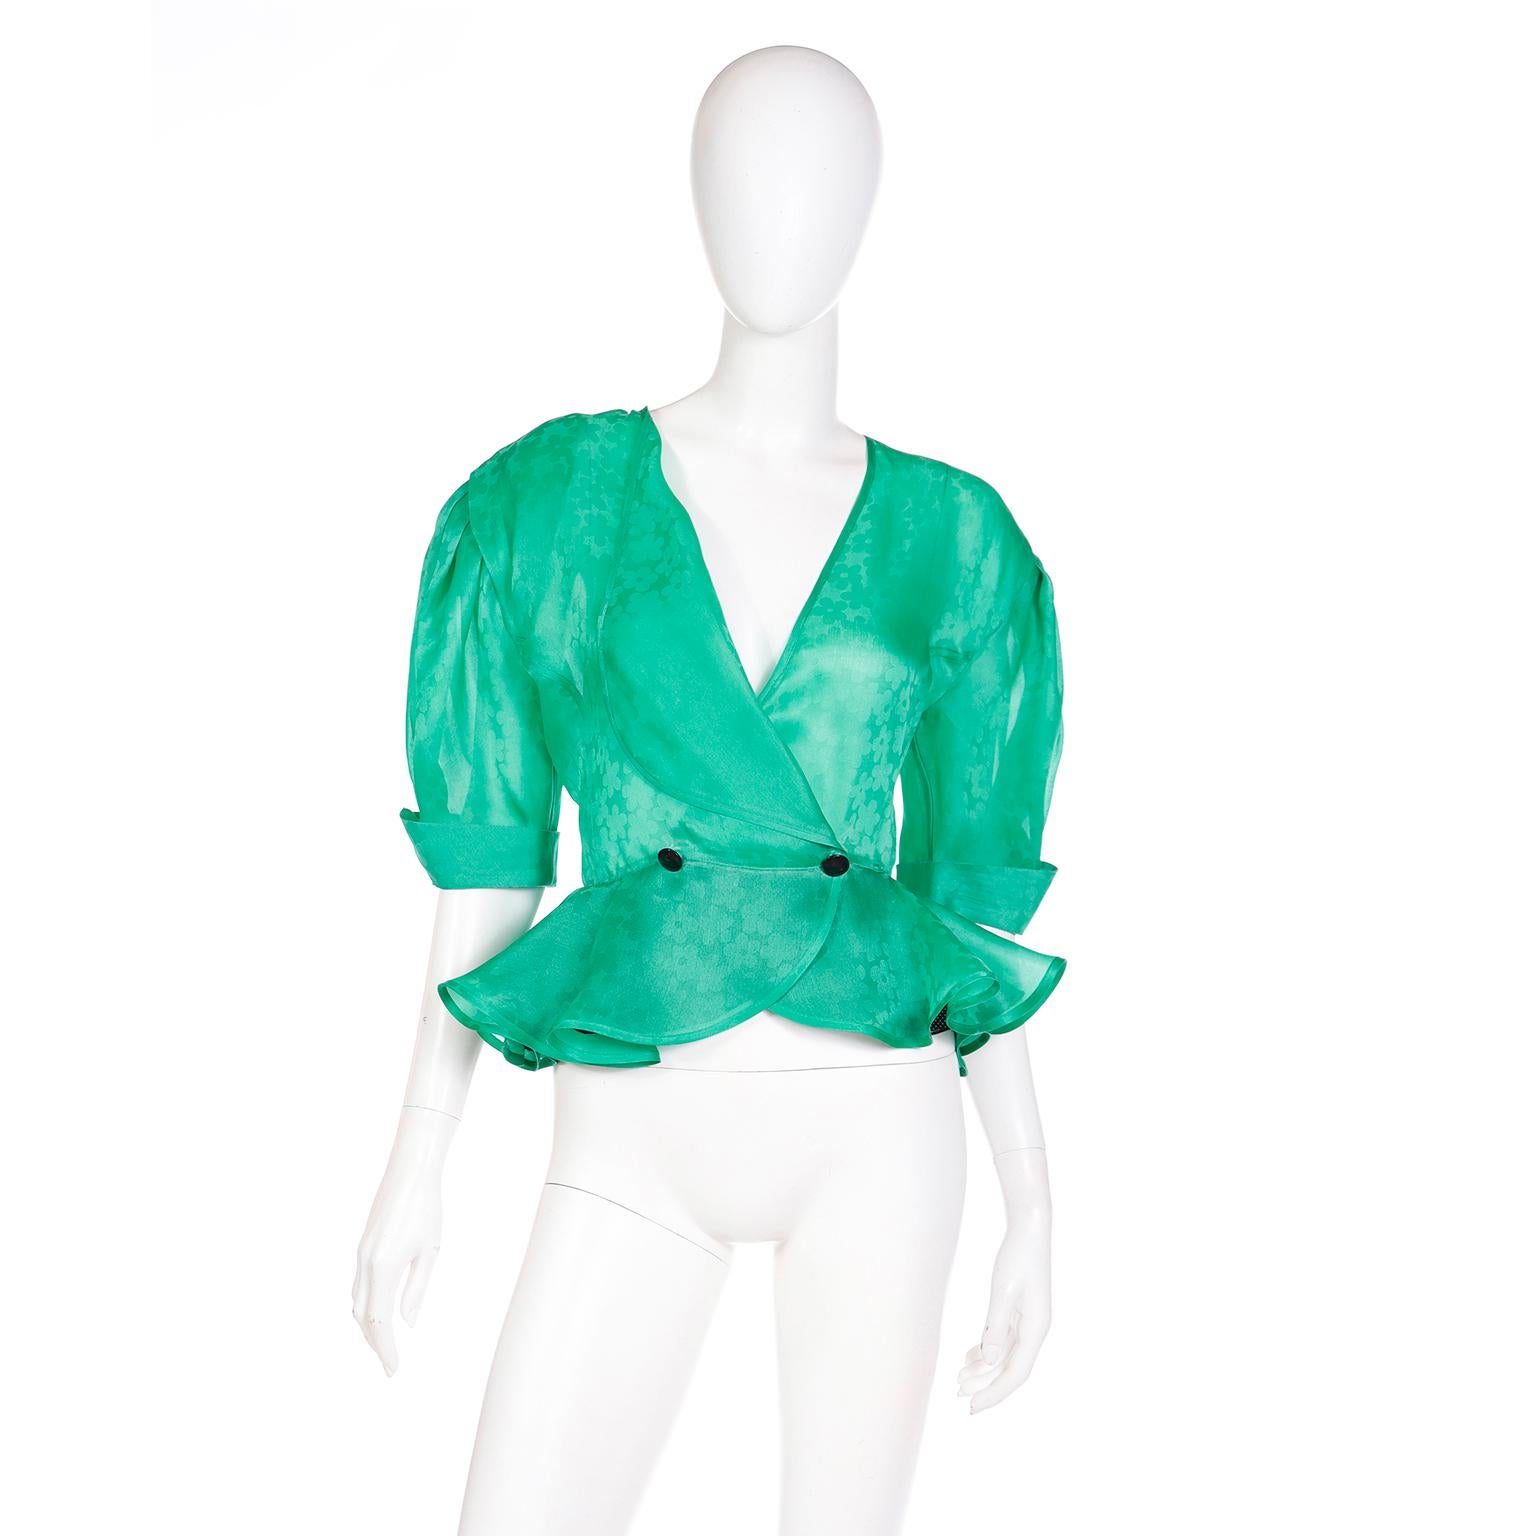 Diese hübsche Vintage-Bluse aus grünem Seidenorganza von Louis Feraud hat einen hübschen gerüschten Schößchensaum und mittellange Ärmel mit umgeschlagenen Manschetten. Diese Bluse aus 100 % Seide ist mit einem farblich abgestimmten Blumenmuster